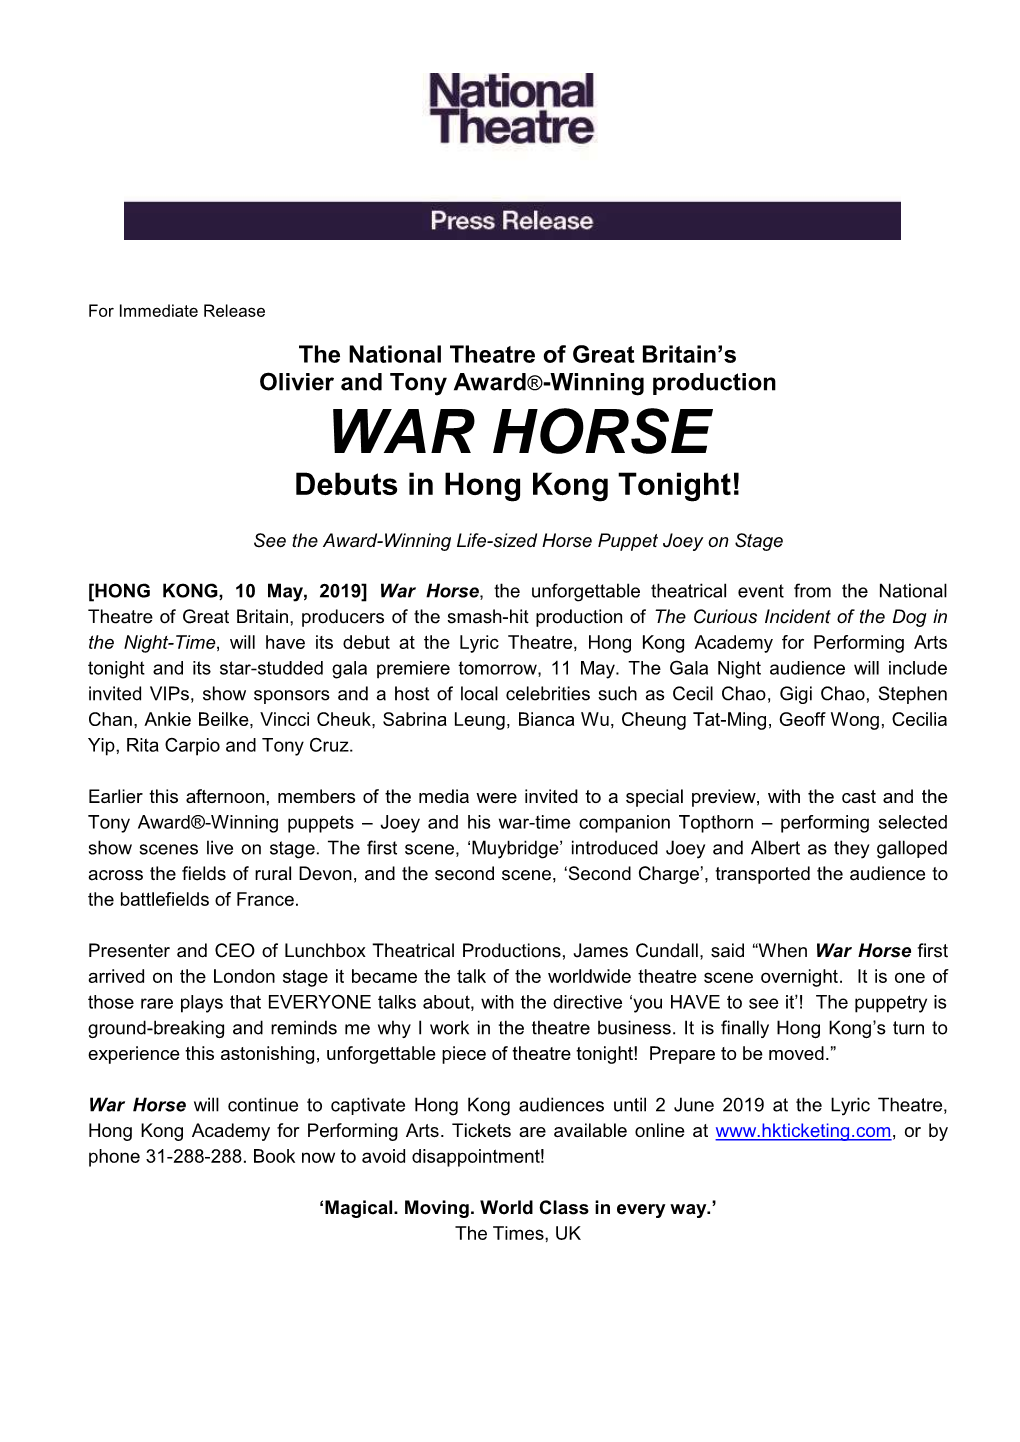 WAR HORSE Debuts in Hong Kong Tonight!